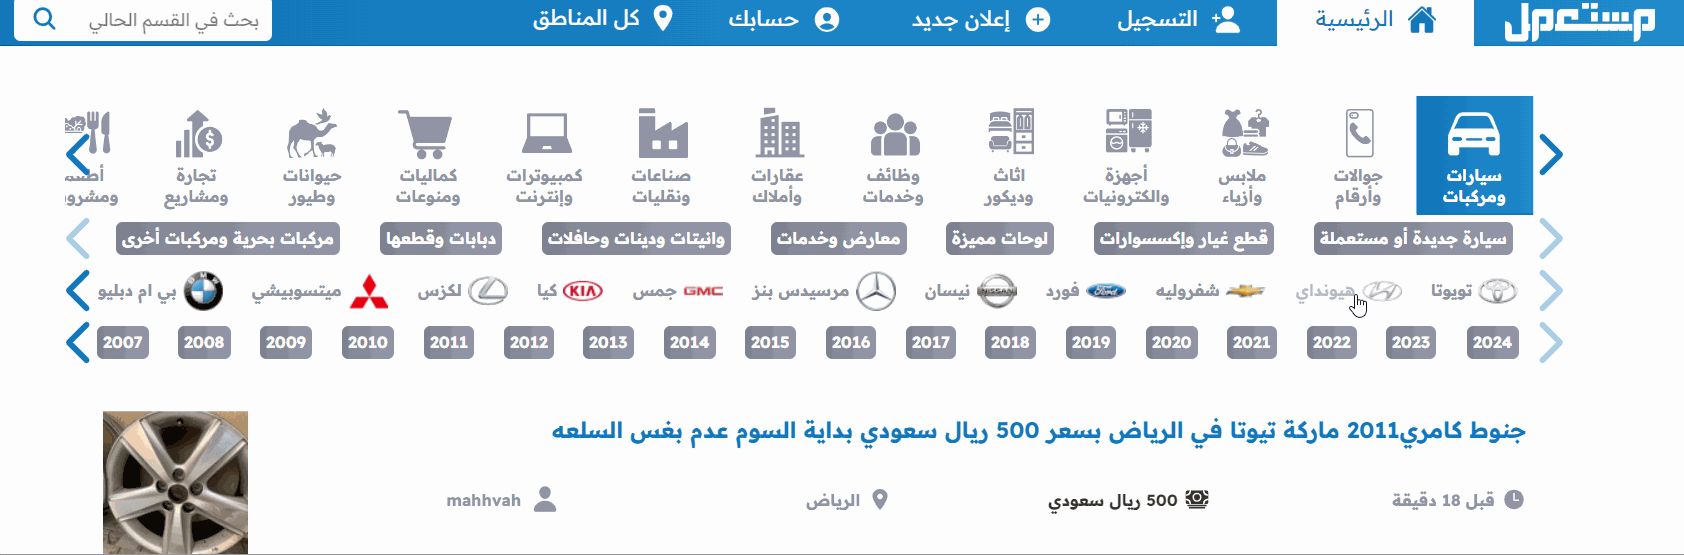 سيارات جاكوار مستعملة للبيع في السعودية بأسعار رخيصة 2